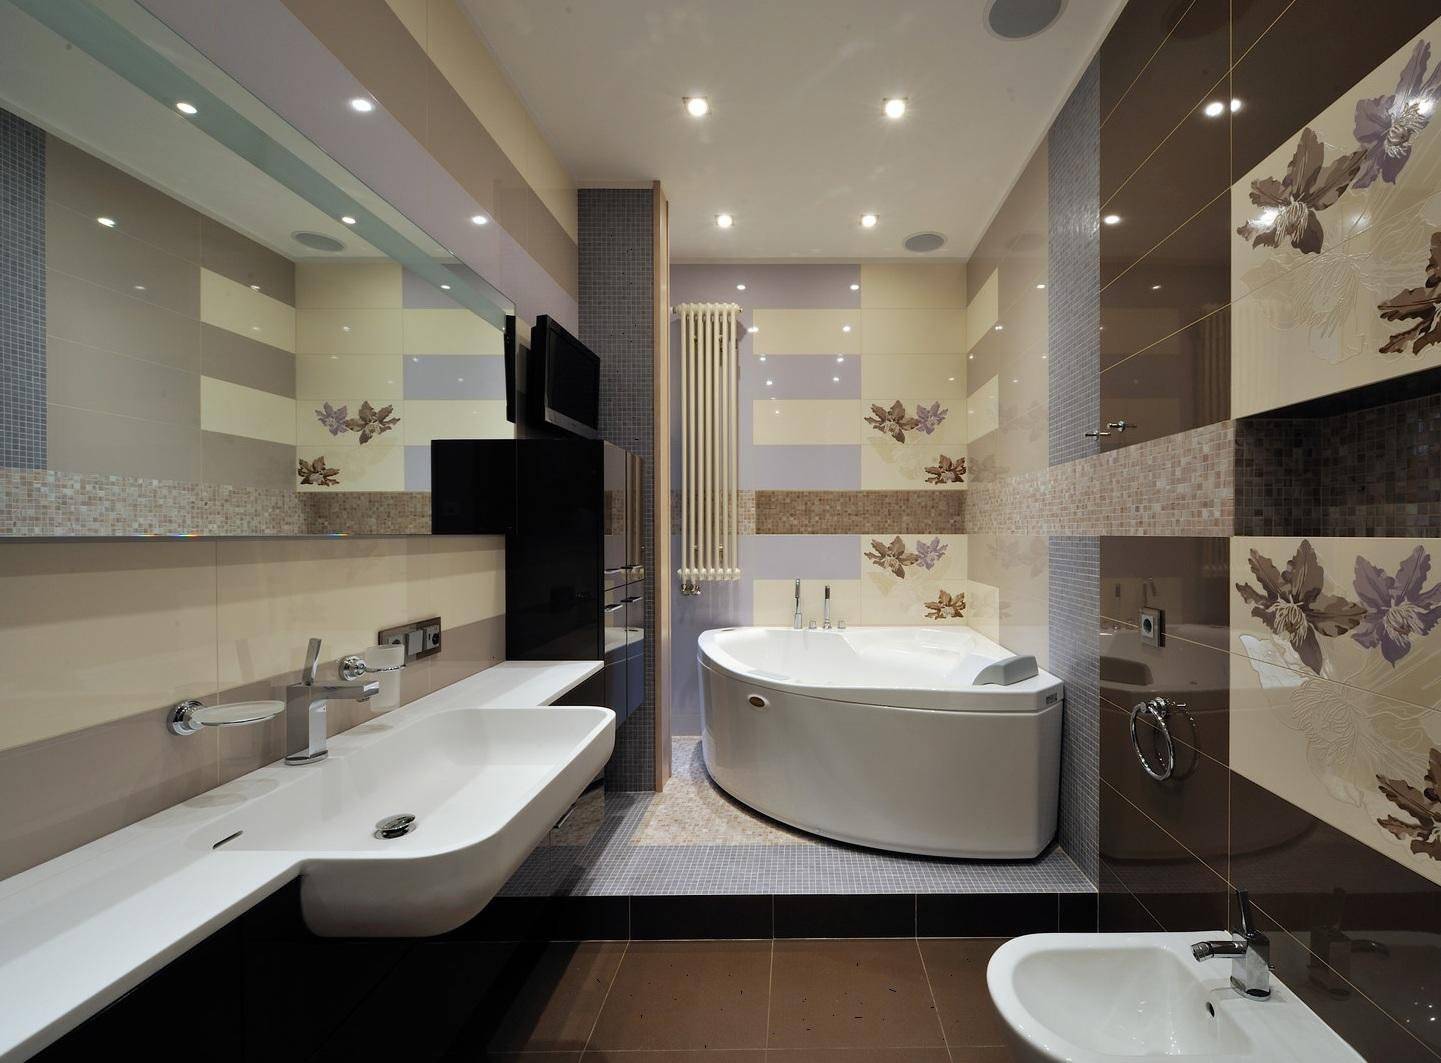 Дизайн — варианты ванных комнат. Обзор интерьерных решений и рекомендации по обустройству